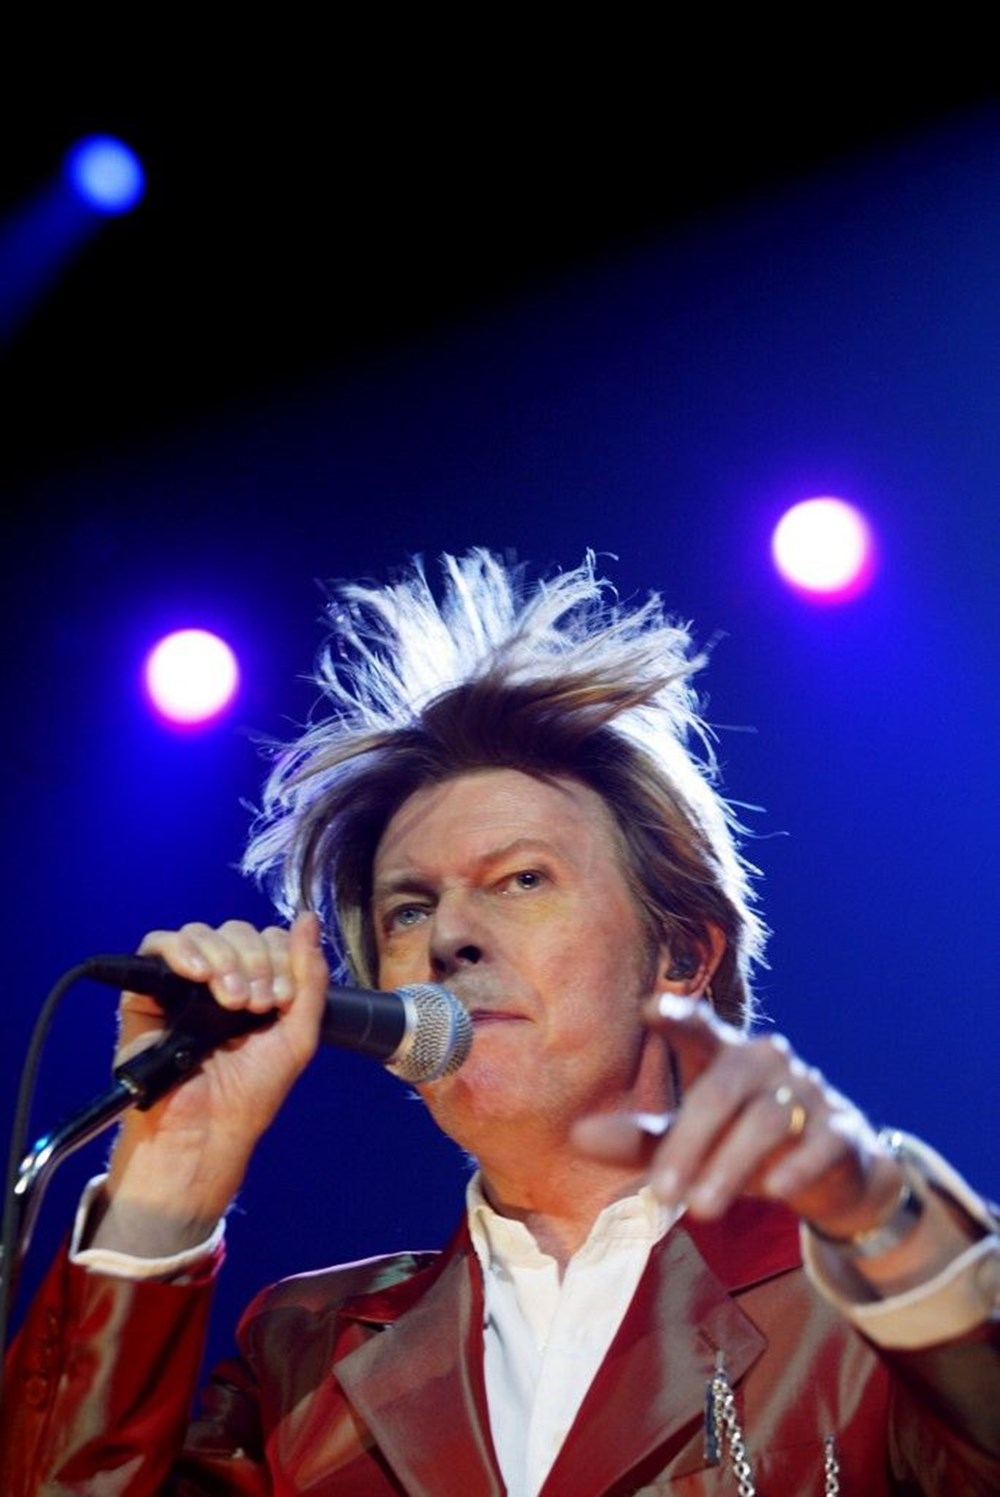 Efsane şarkıcı David Bowie anılıyor (David Bowie'nin yaşamı ve kariyeri) - 2